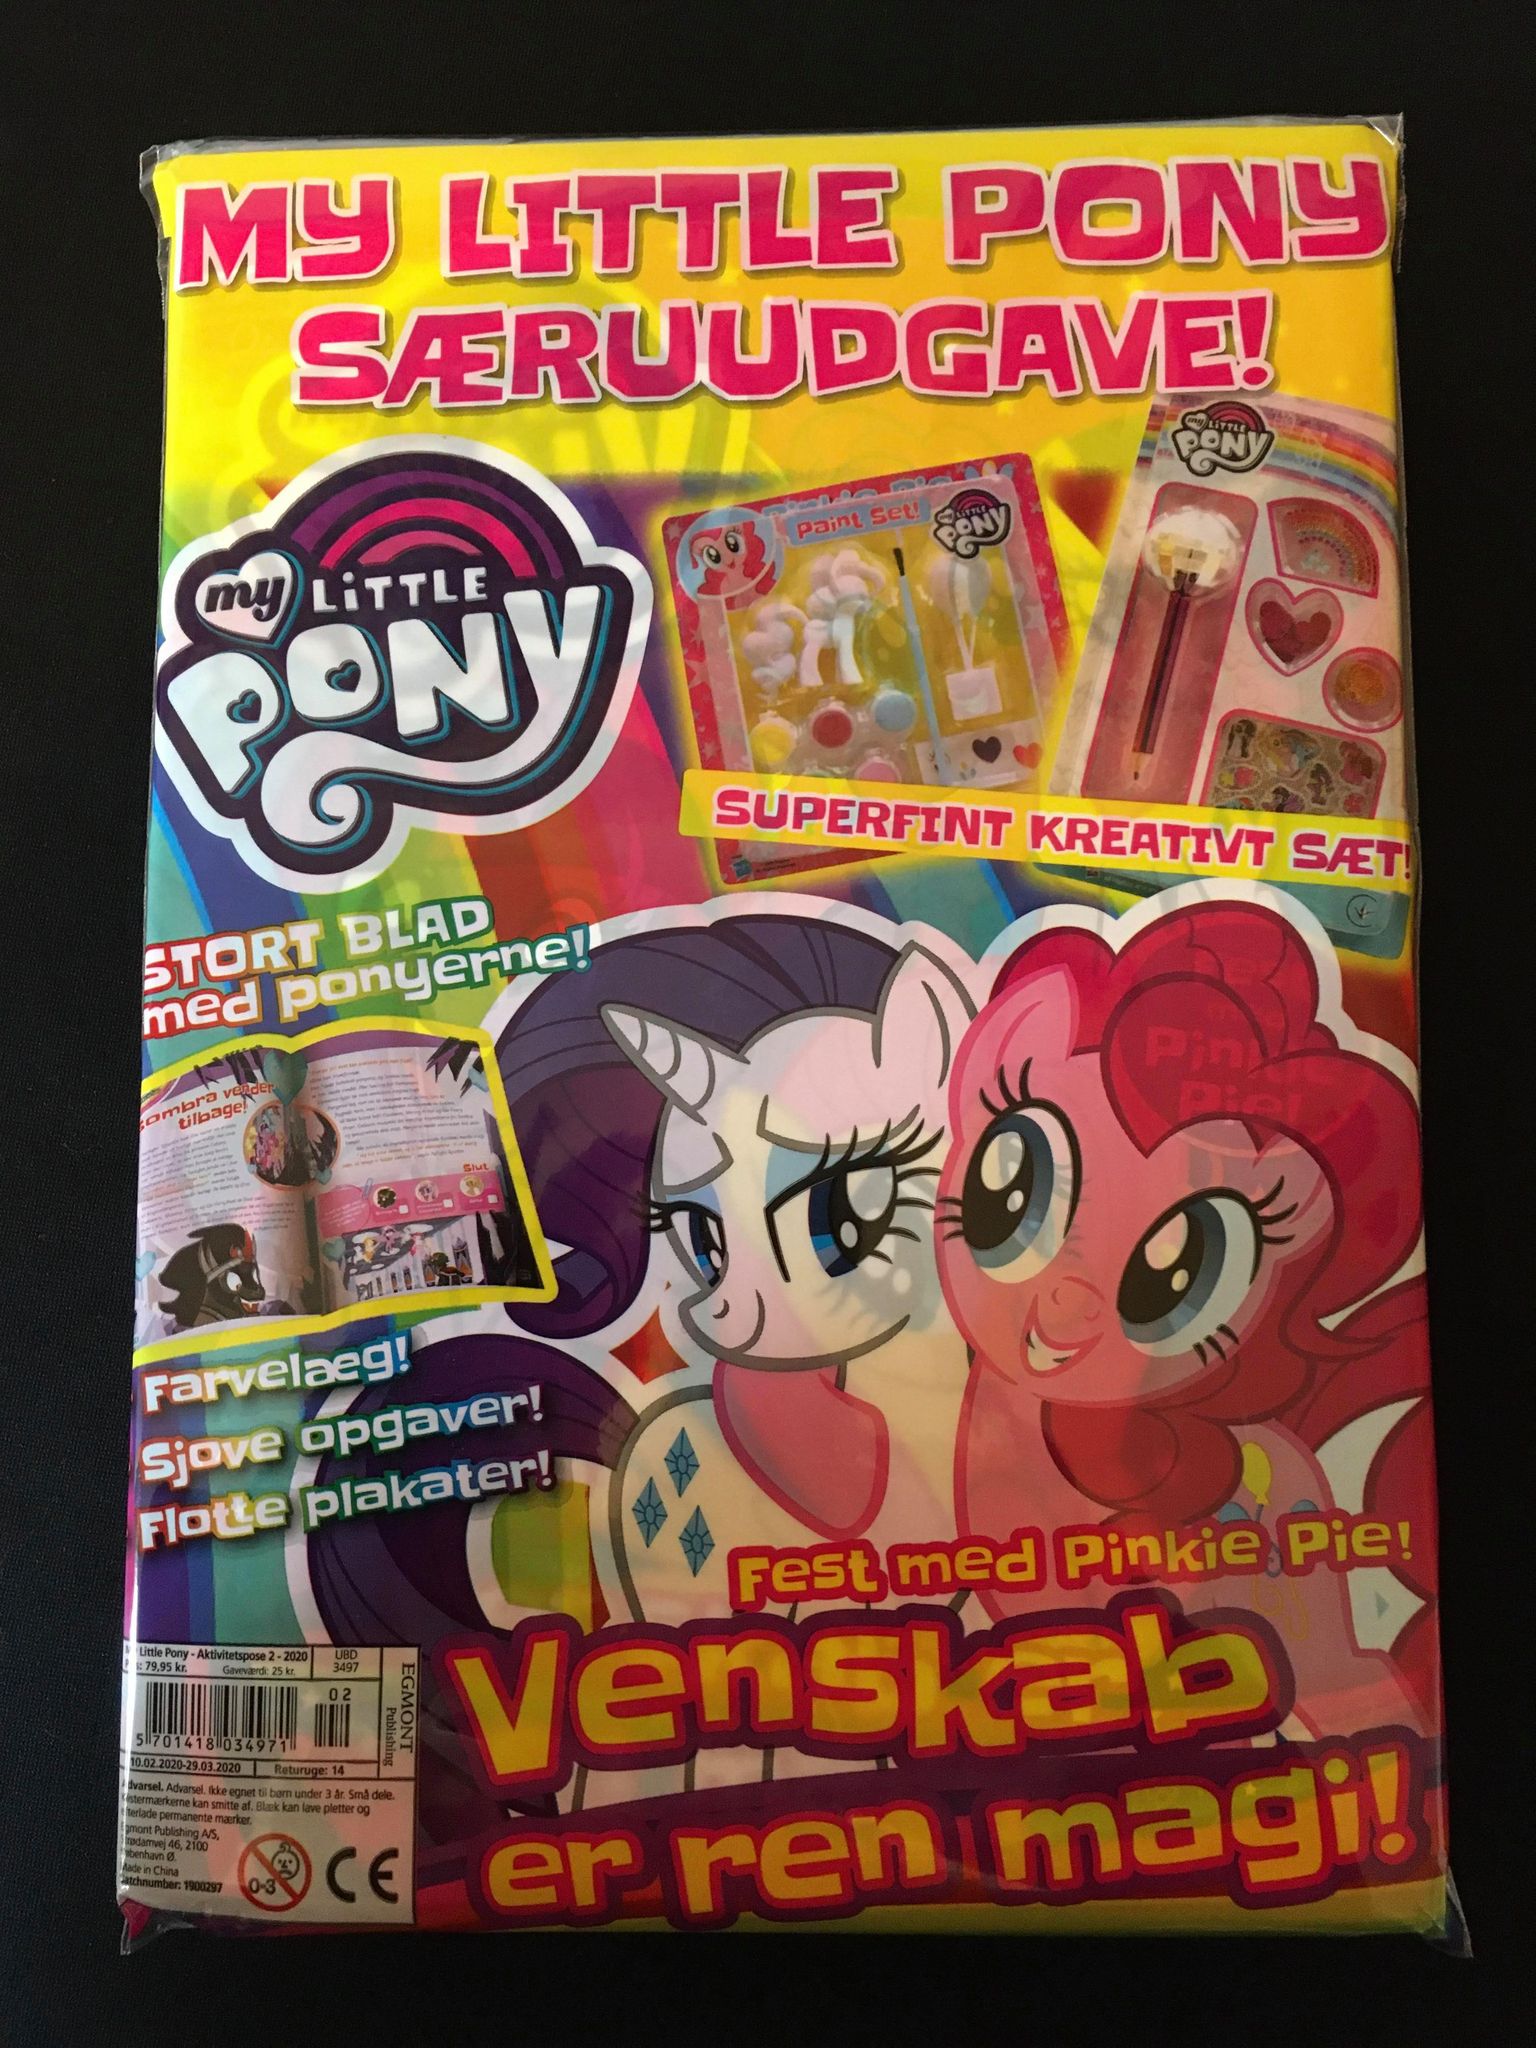 Issue 2 of the Danish magazine